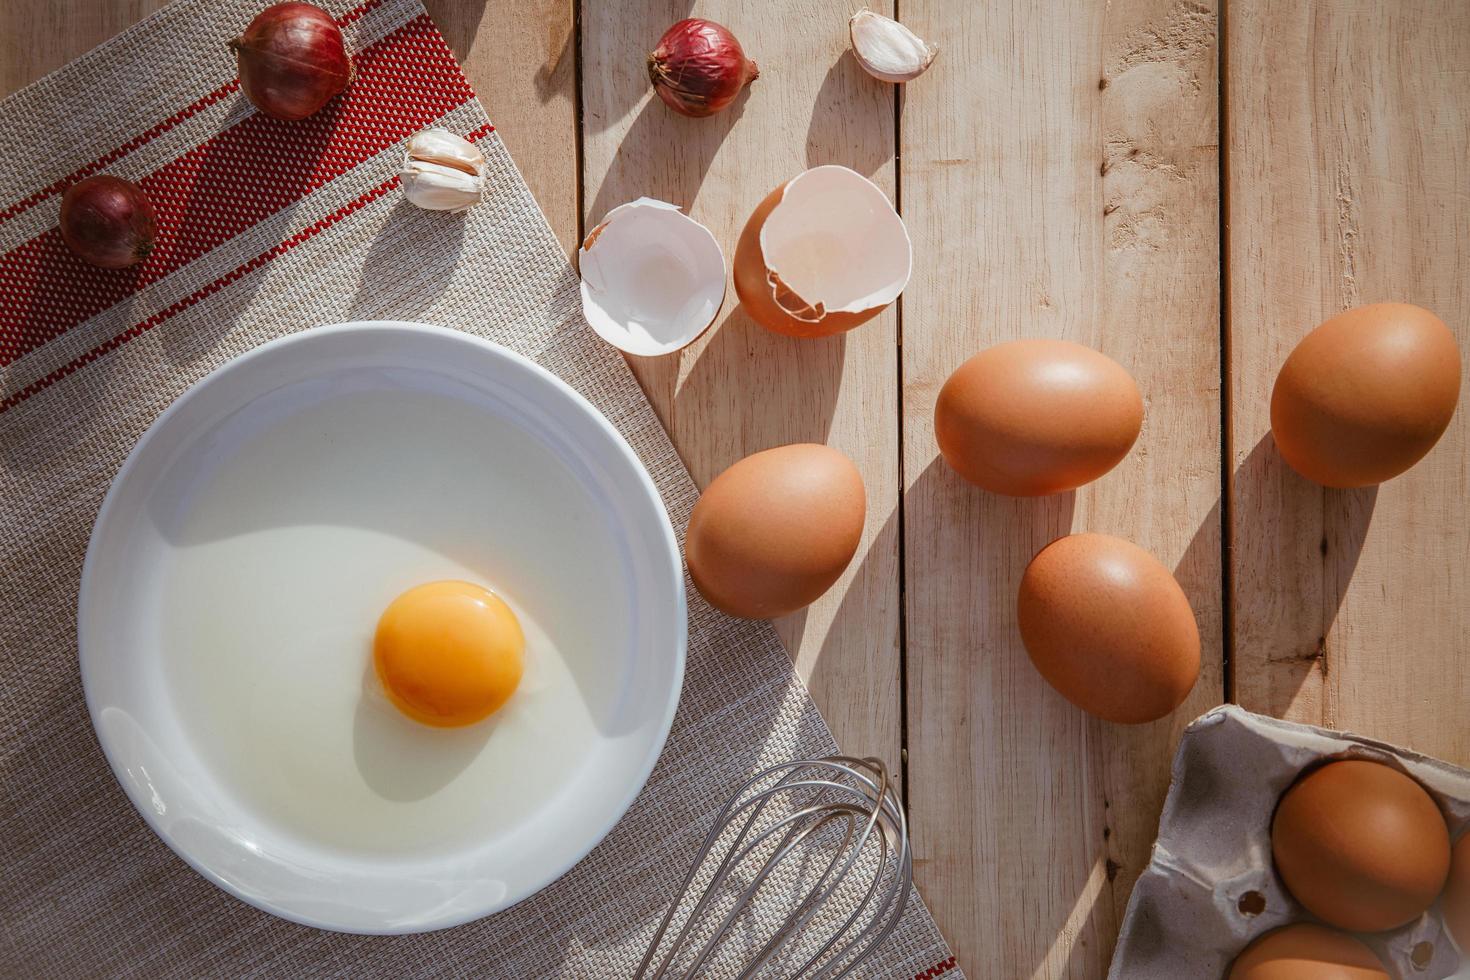 le uova giacciono su vassoi di legno e hanno uova rotte. foto